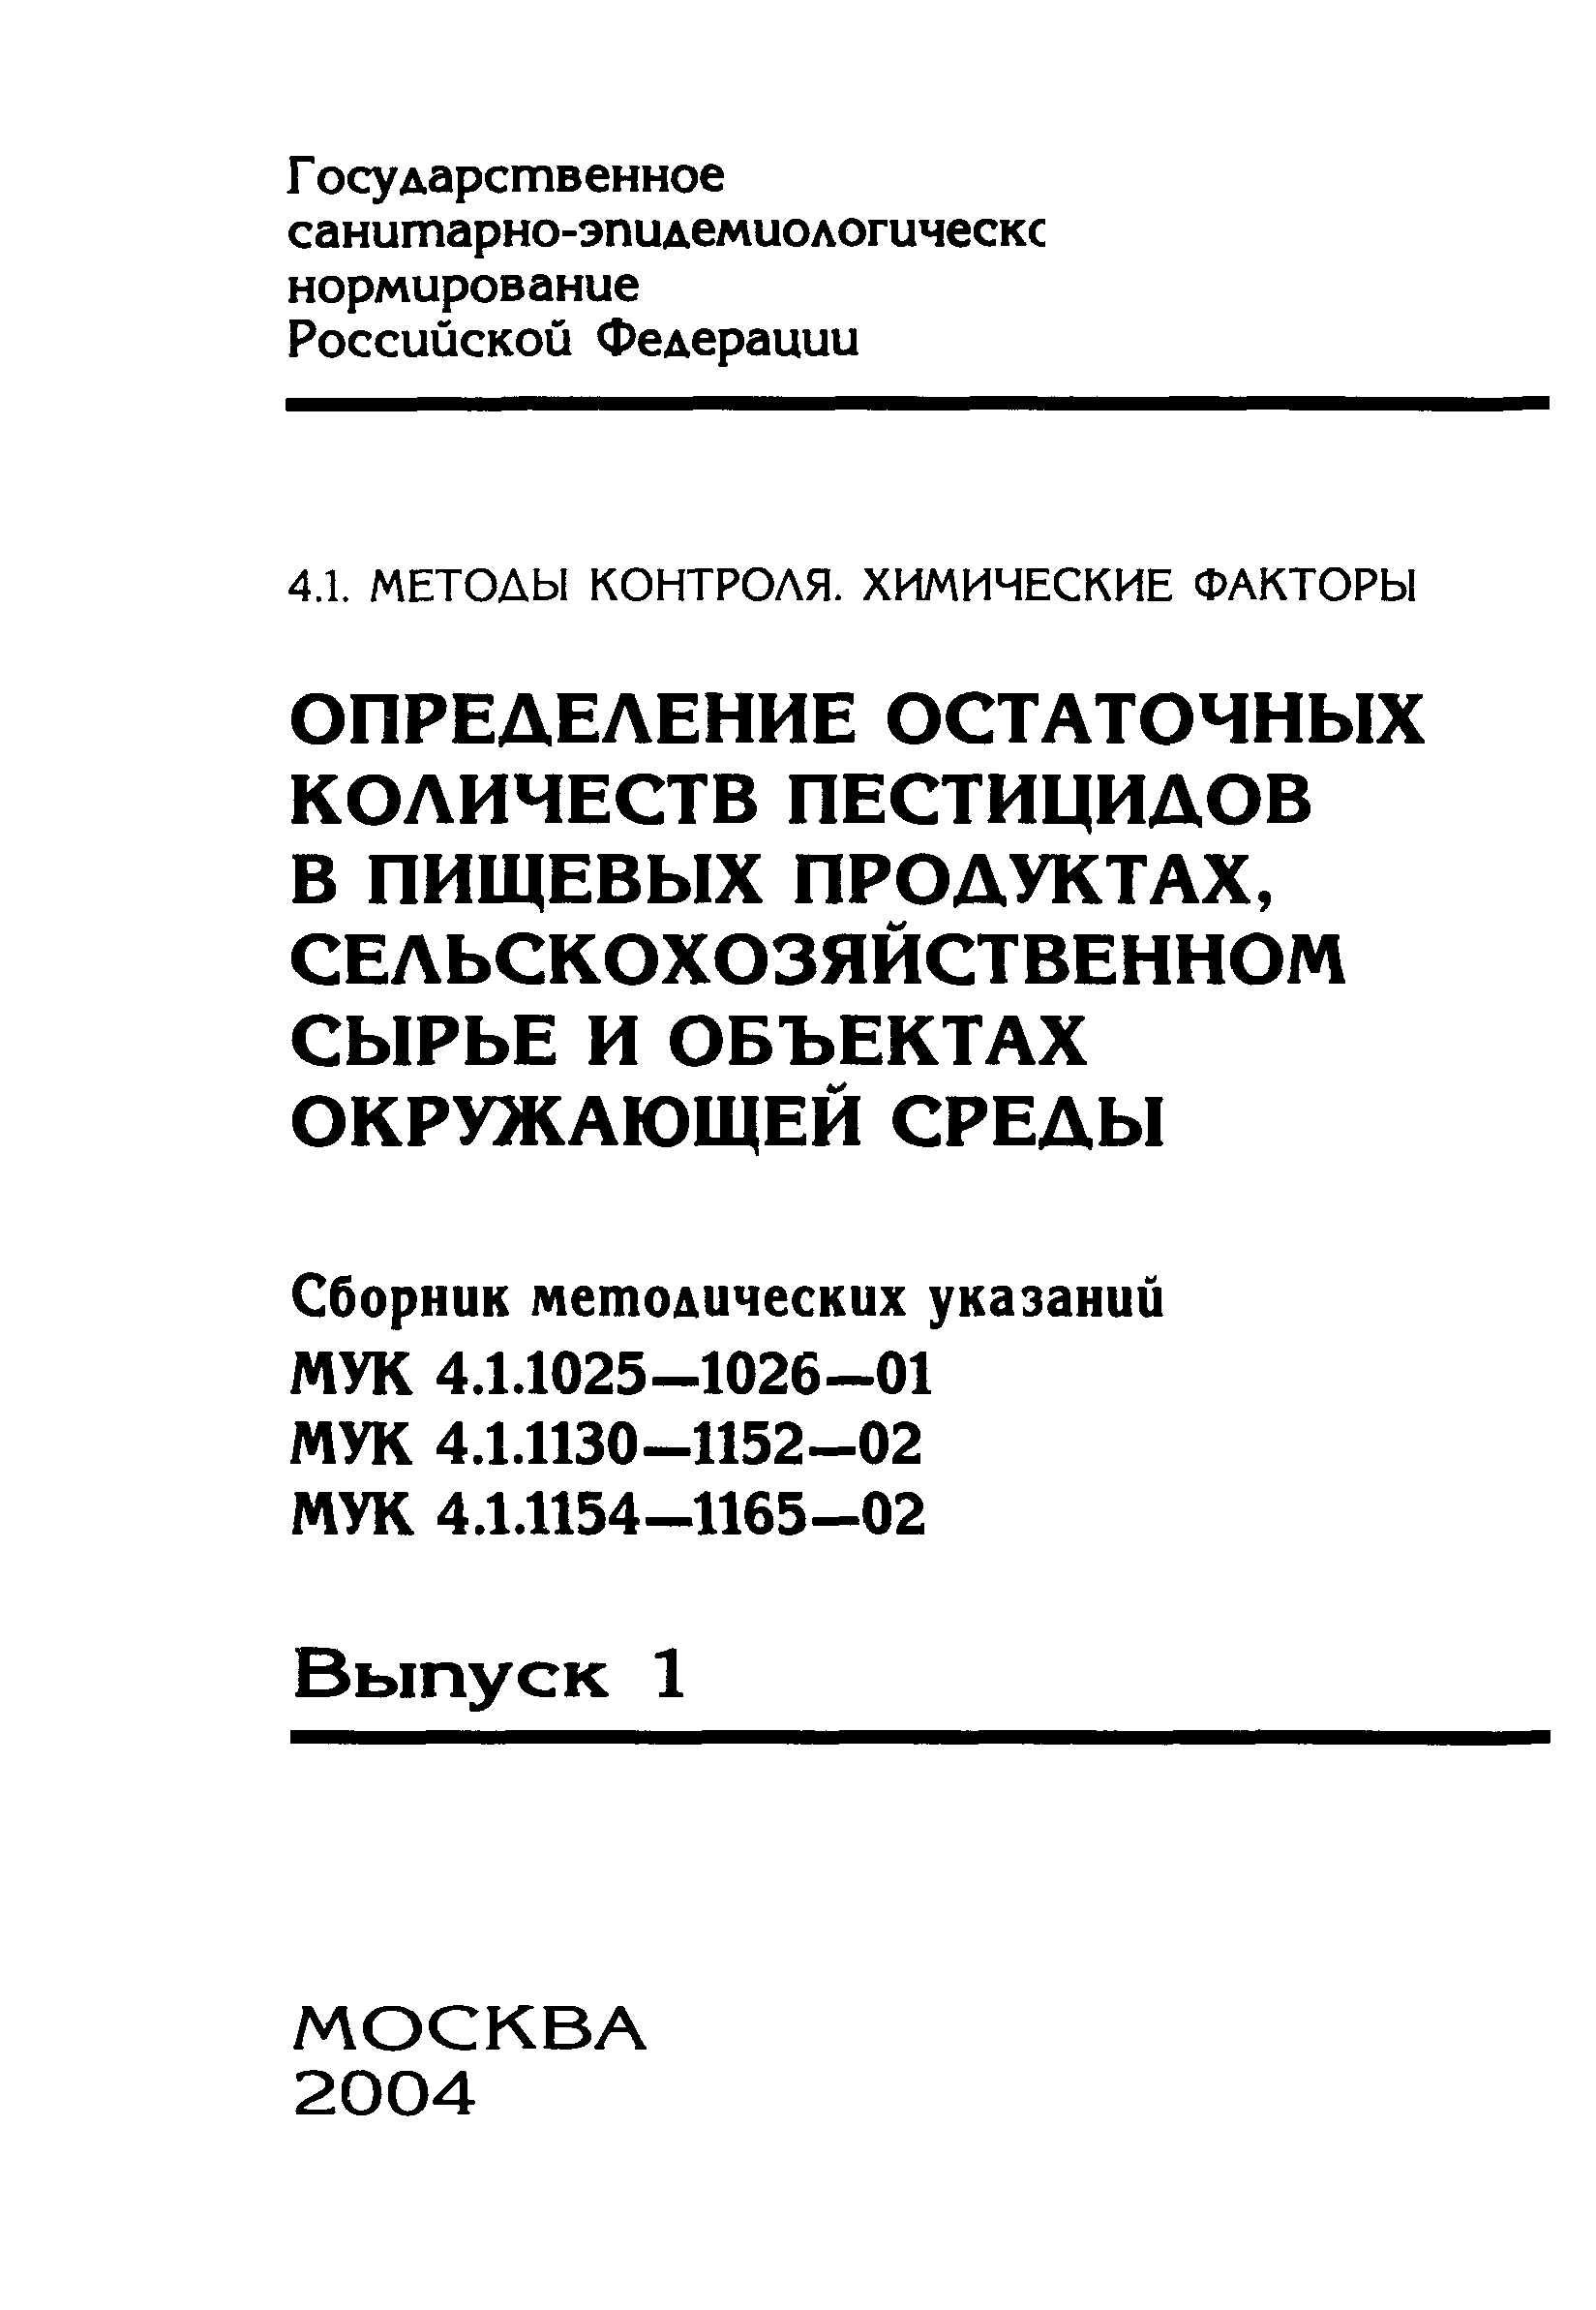 МУК 4.1.1026-01